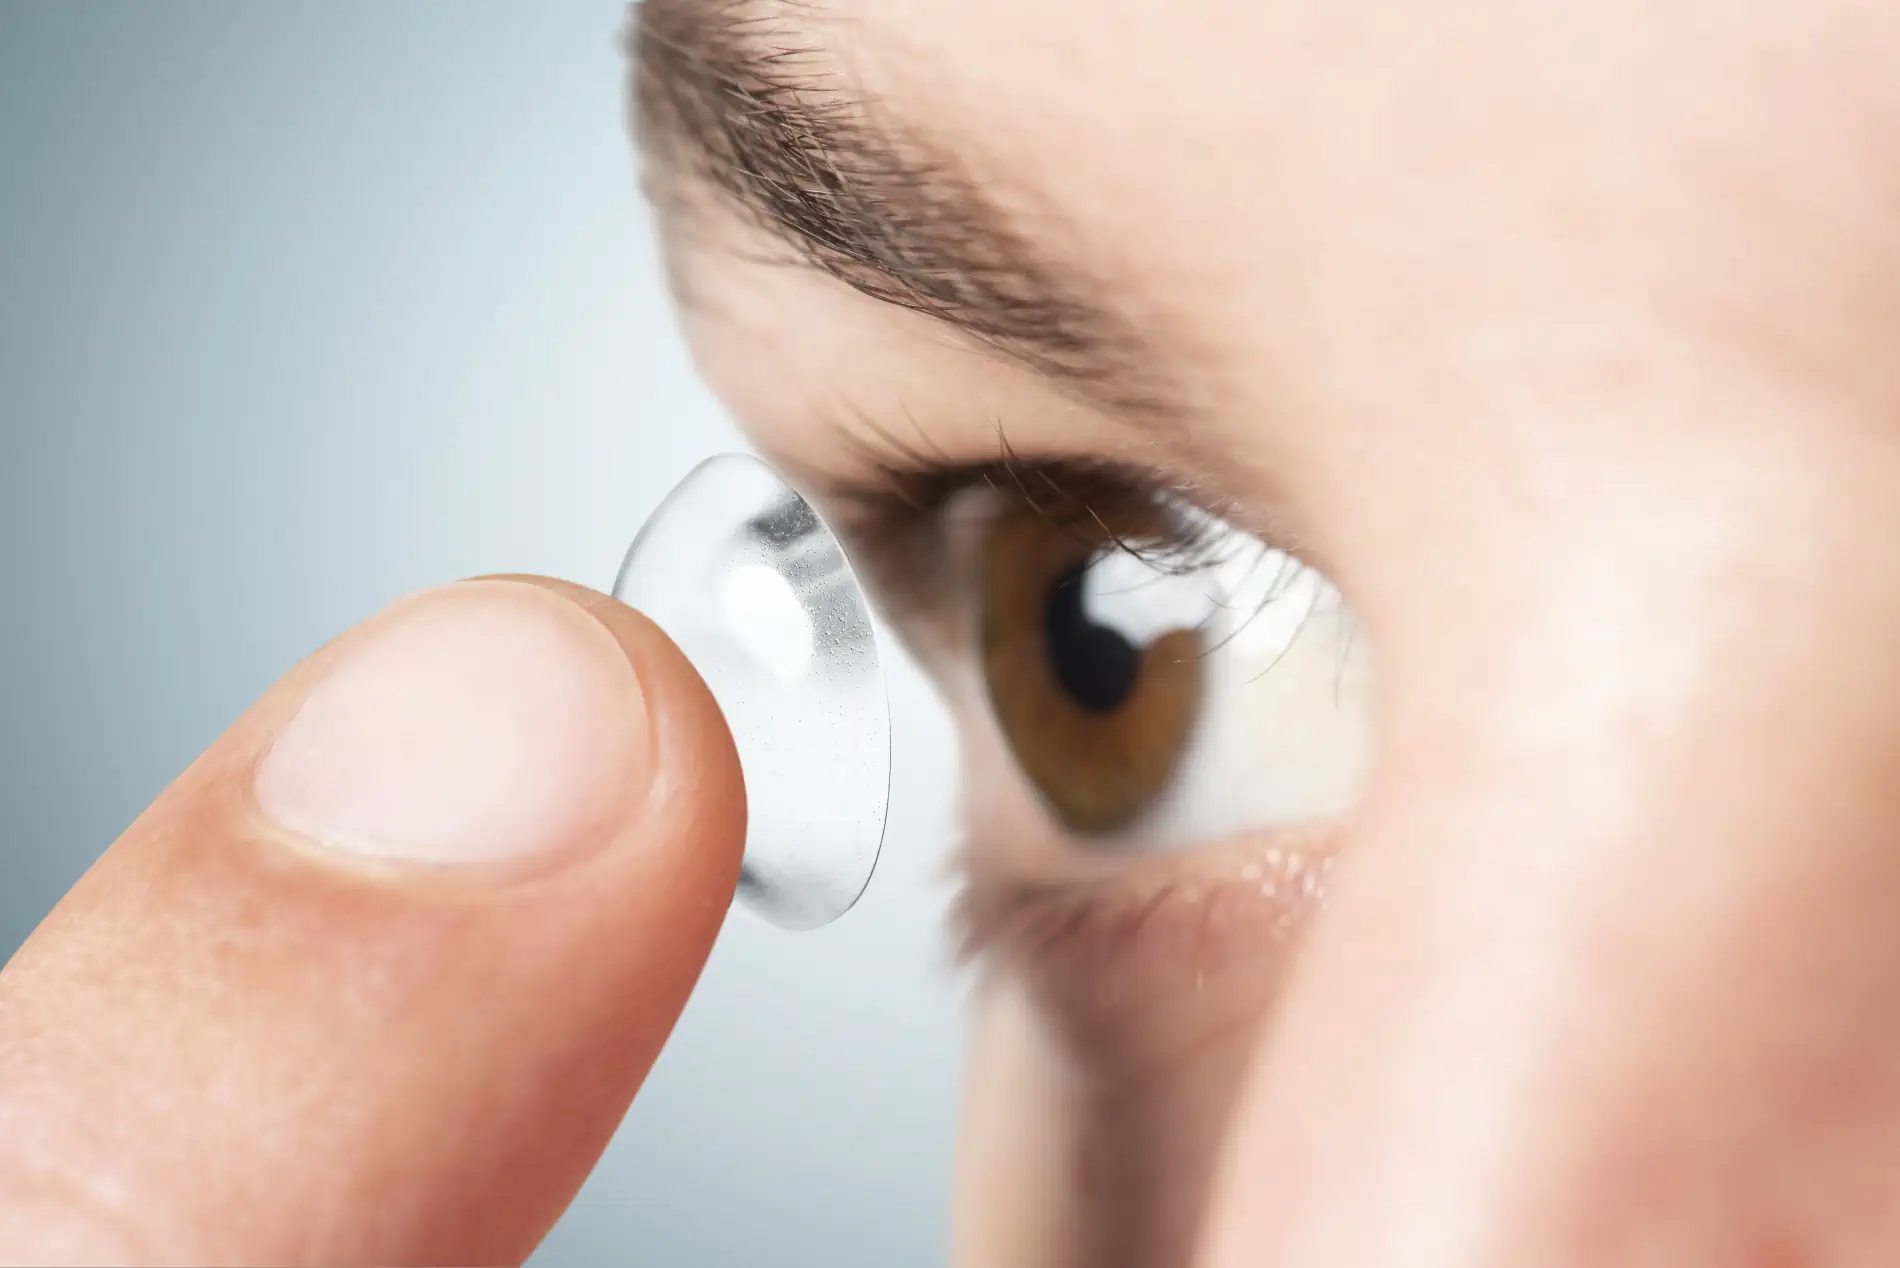 Des lentilles de contact pour hommes : faut-il opter pour des lentilles claires ou colorées ?